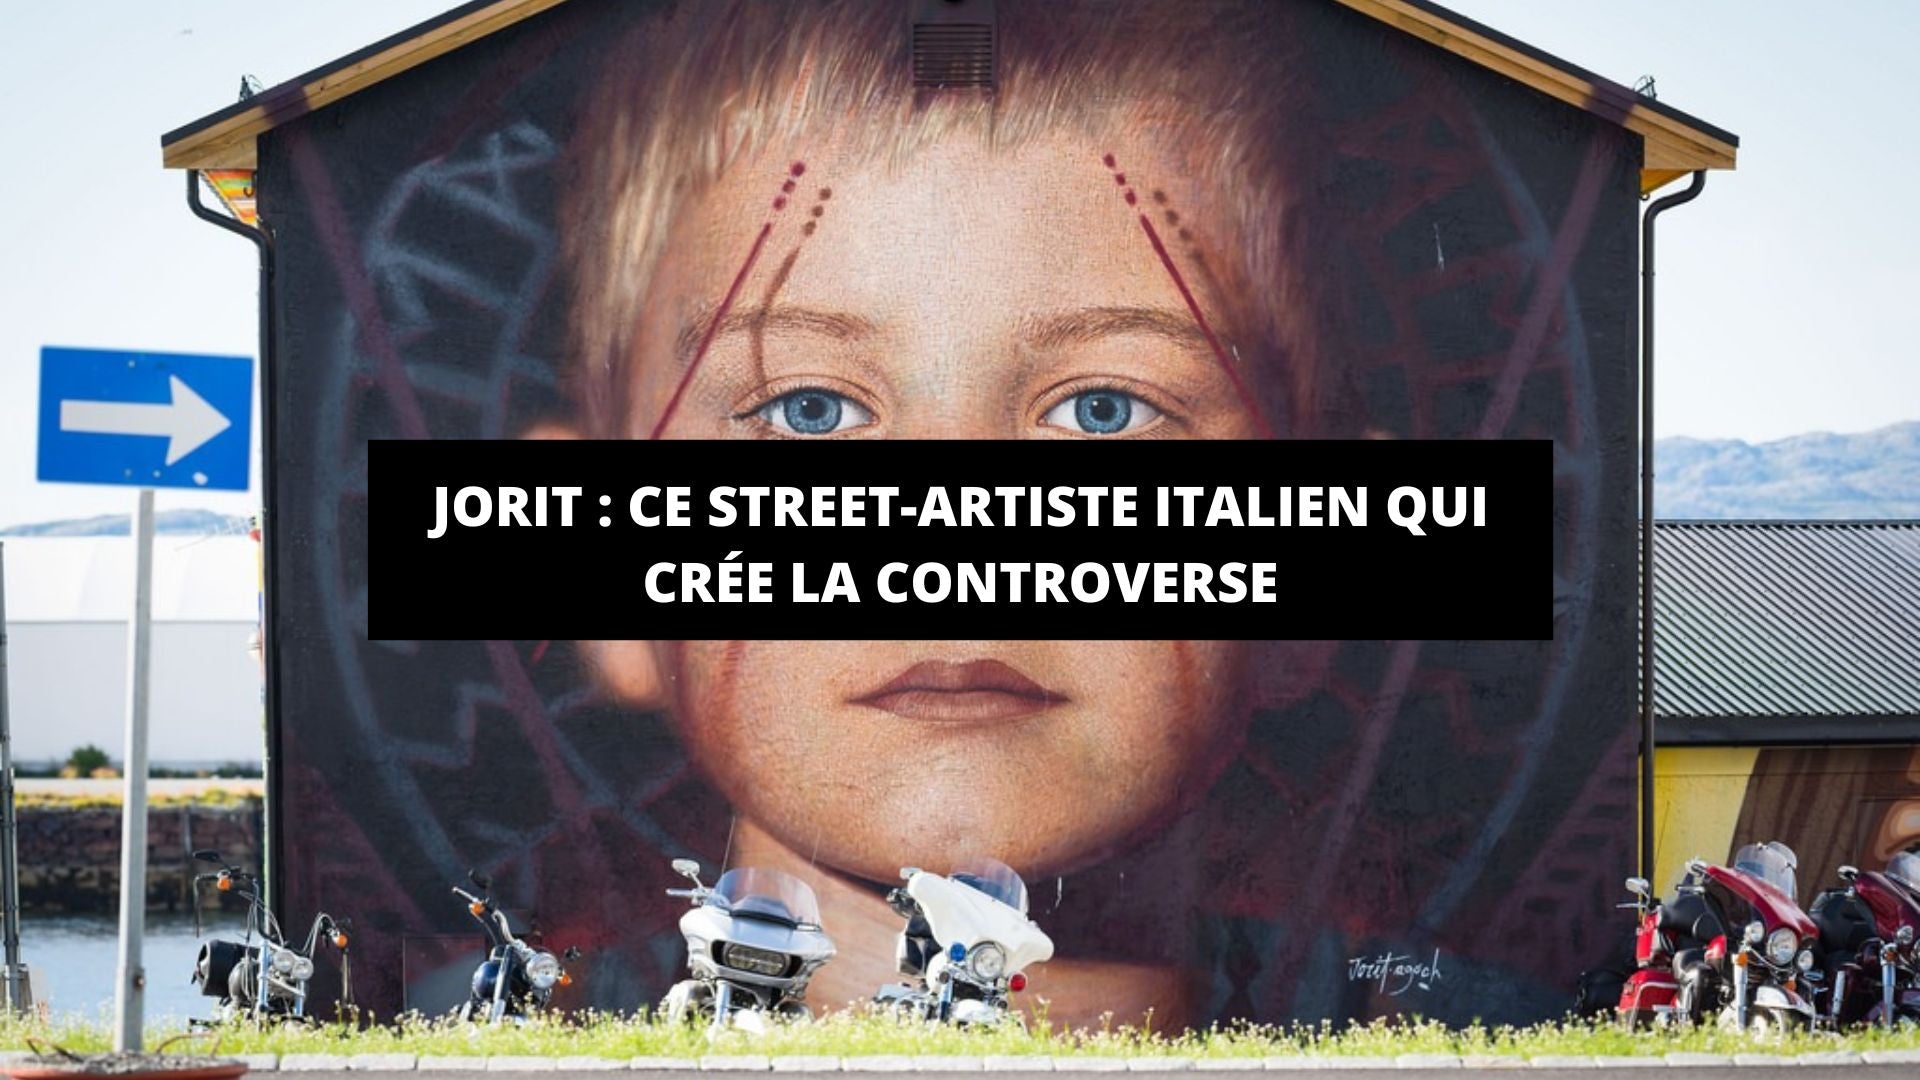 Jorit : ce street-artiste italien qui crée la controverse - The Art Avenue